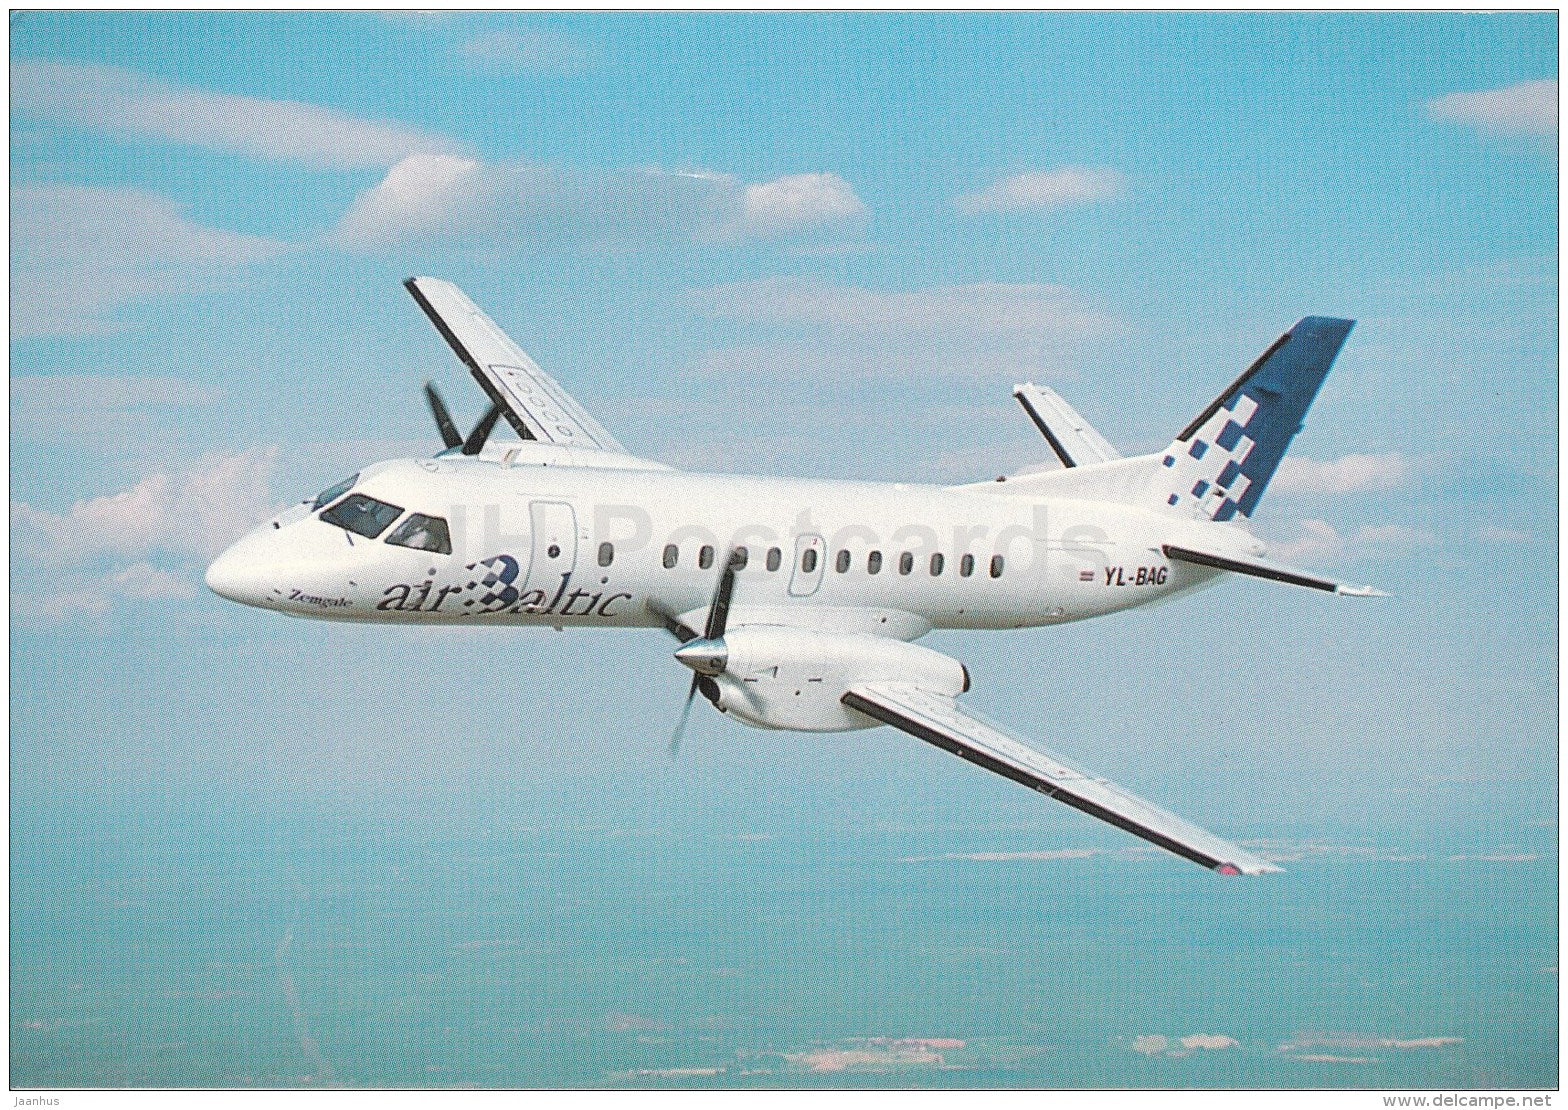 Saab 340 - airplane - Air Baltic - Latvia - unused - JH Postcards